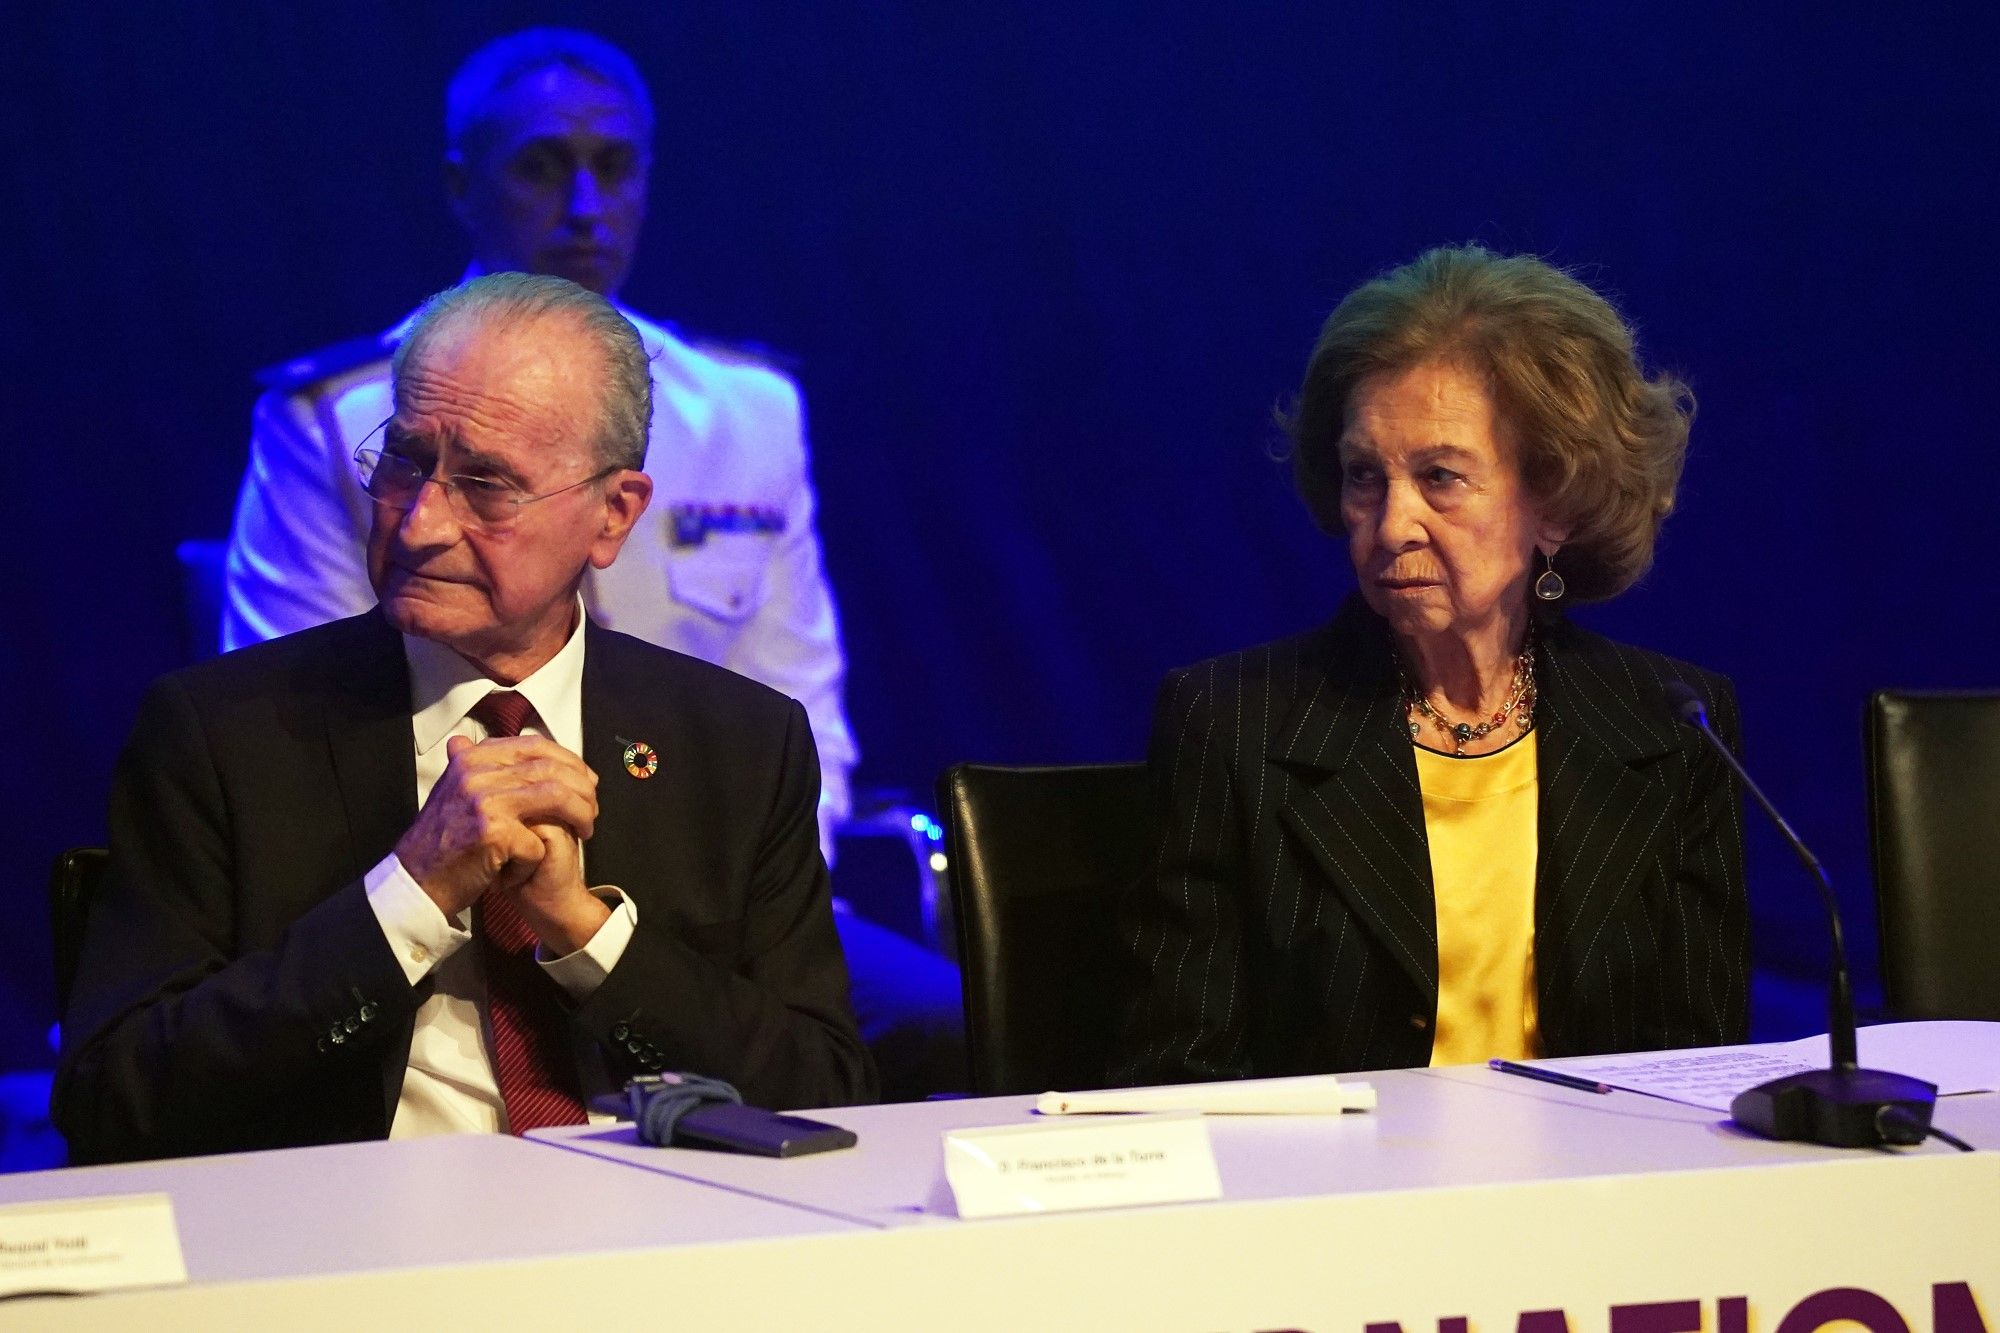 La reina Sofía inaugura en Málaga el Congreso sobre Enfermedades Neurodegenerativas